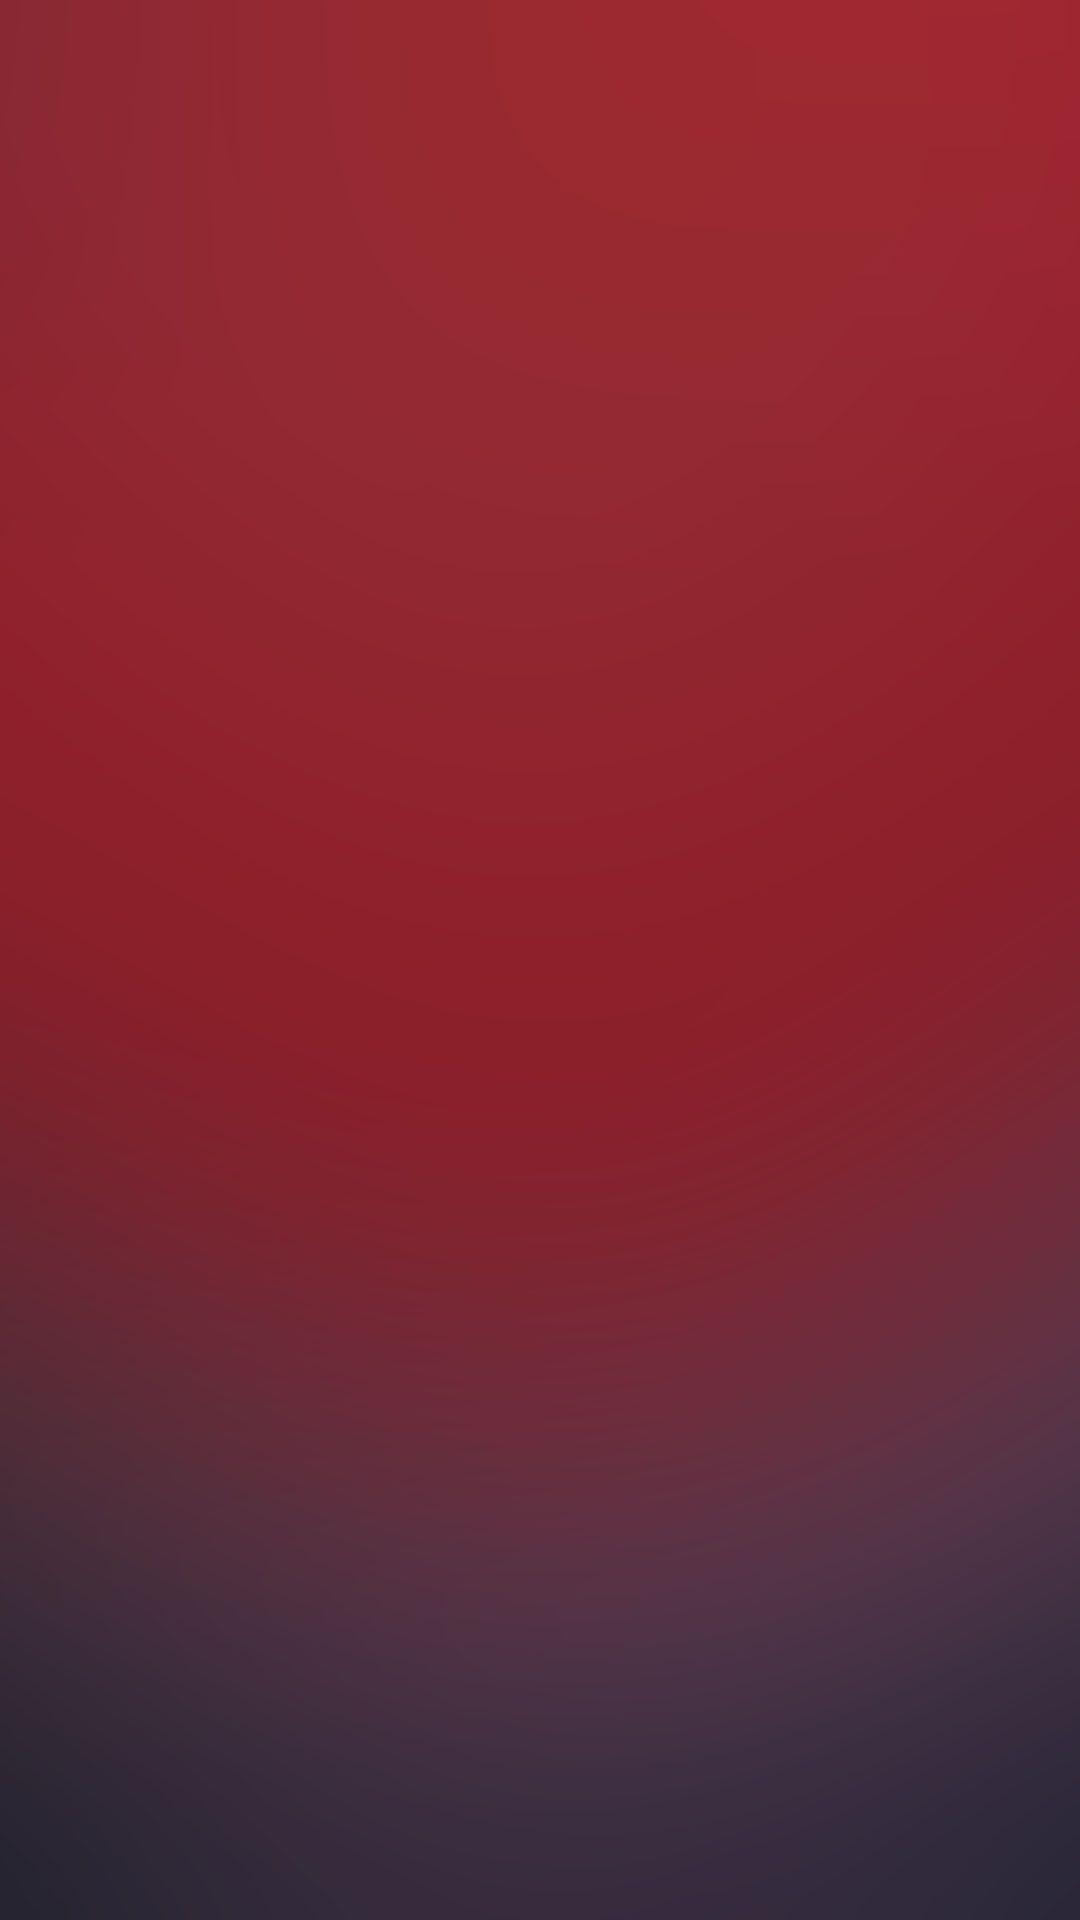 Hình nền HD 1080x1920 Red dành cho Android - iPhone Xs Max Red, HD